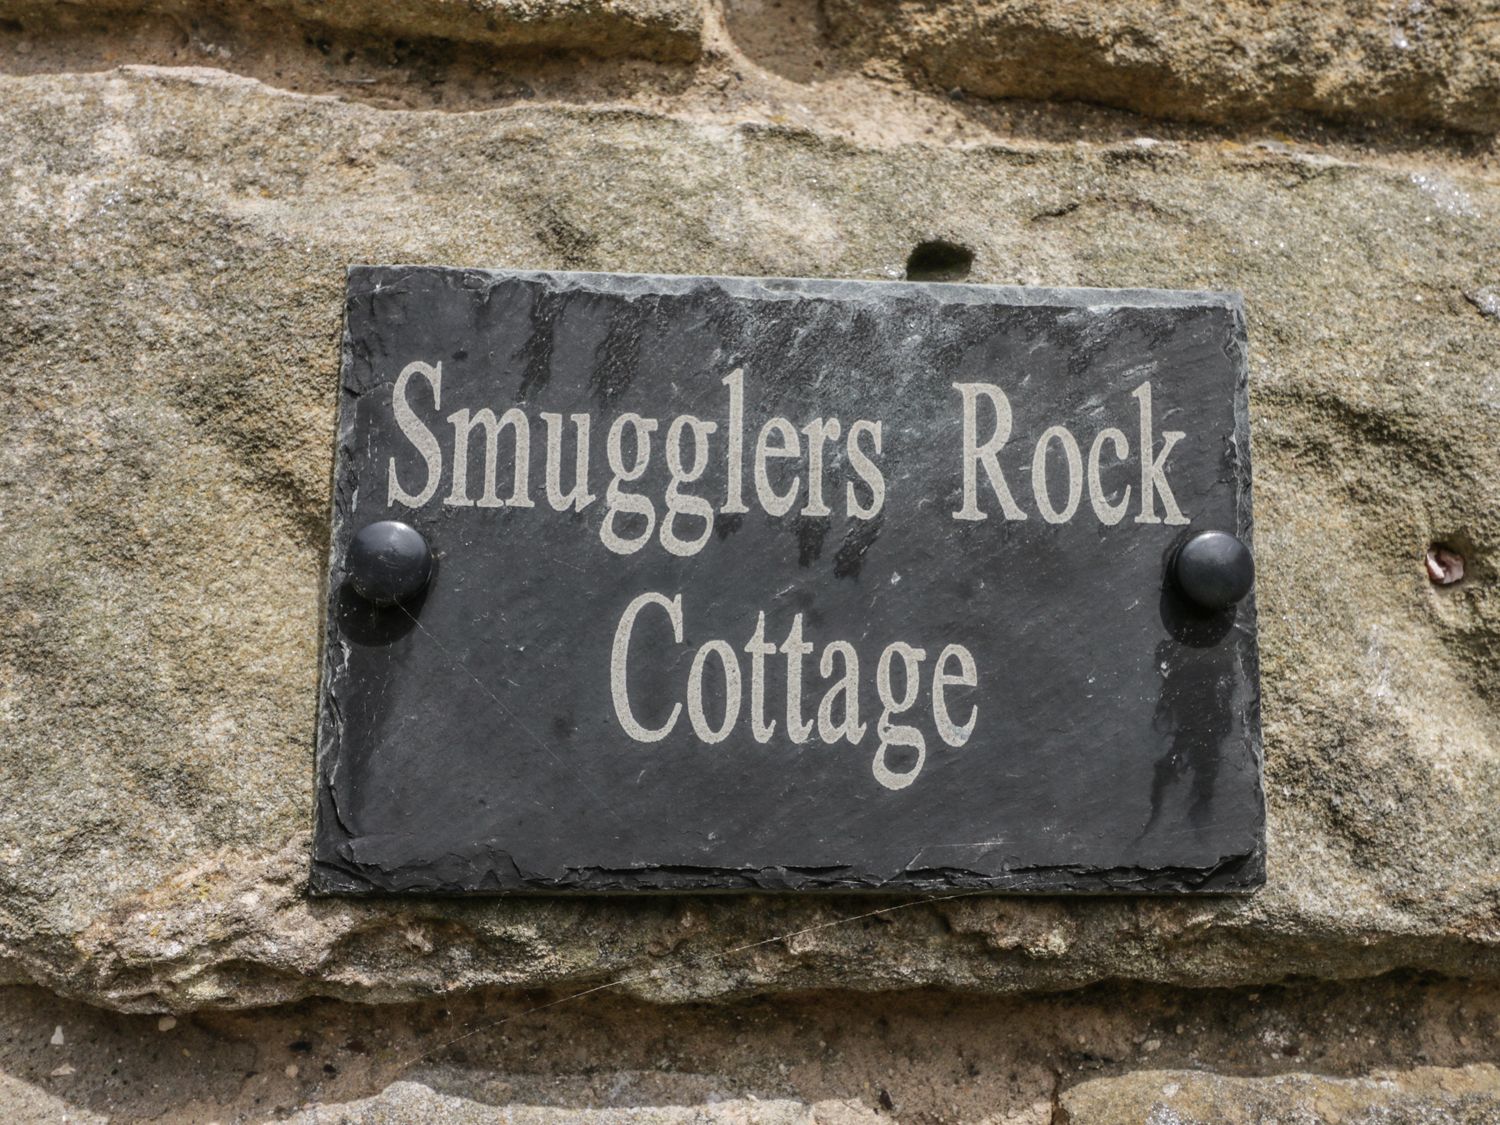 Smugglers Rock Cottage, Yorkshire